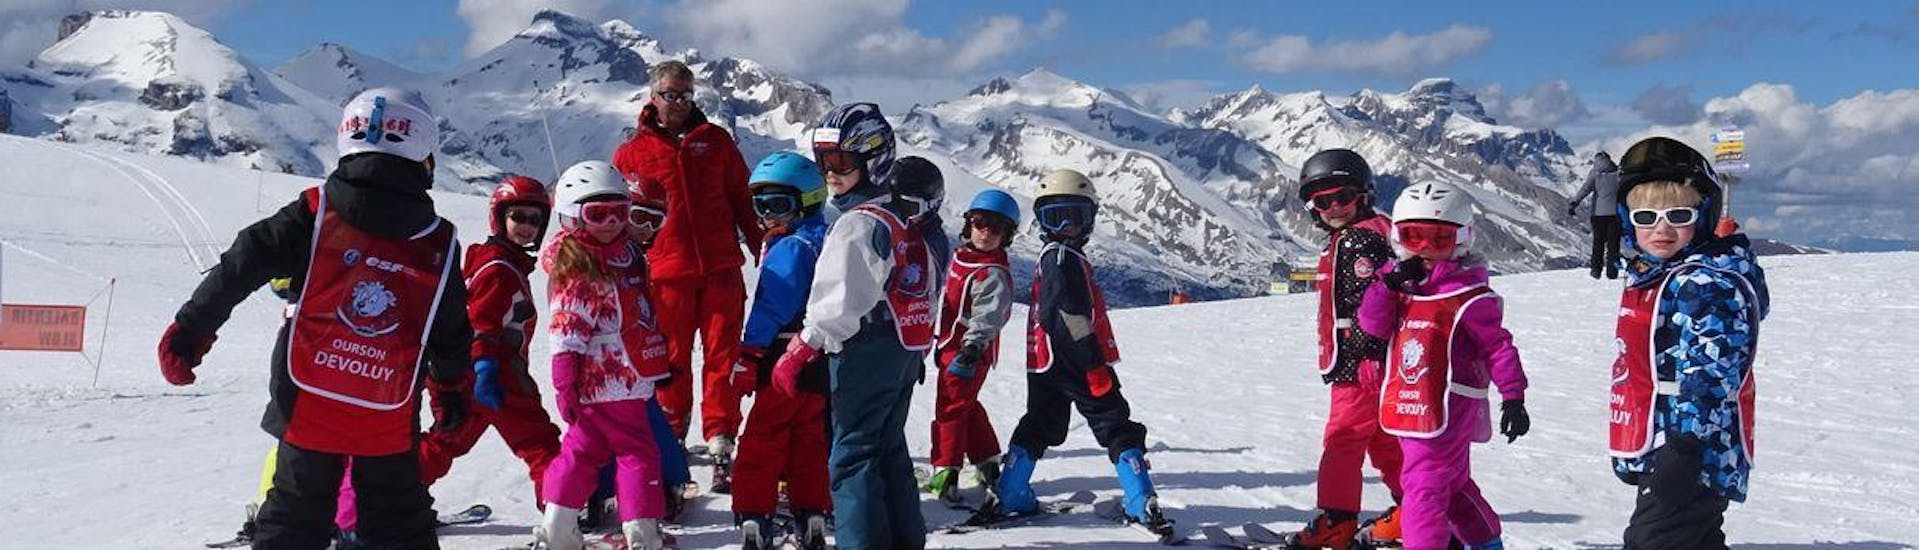 Clases de esquí para niños a partir de 6 años.